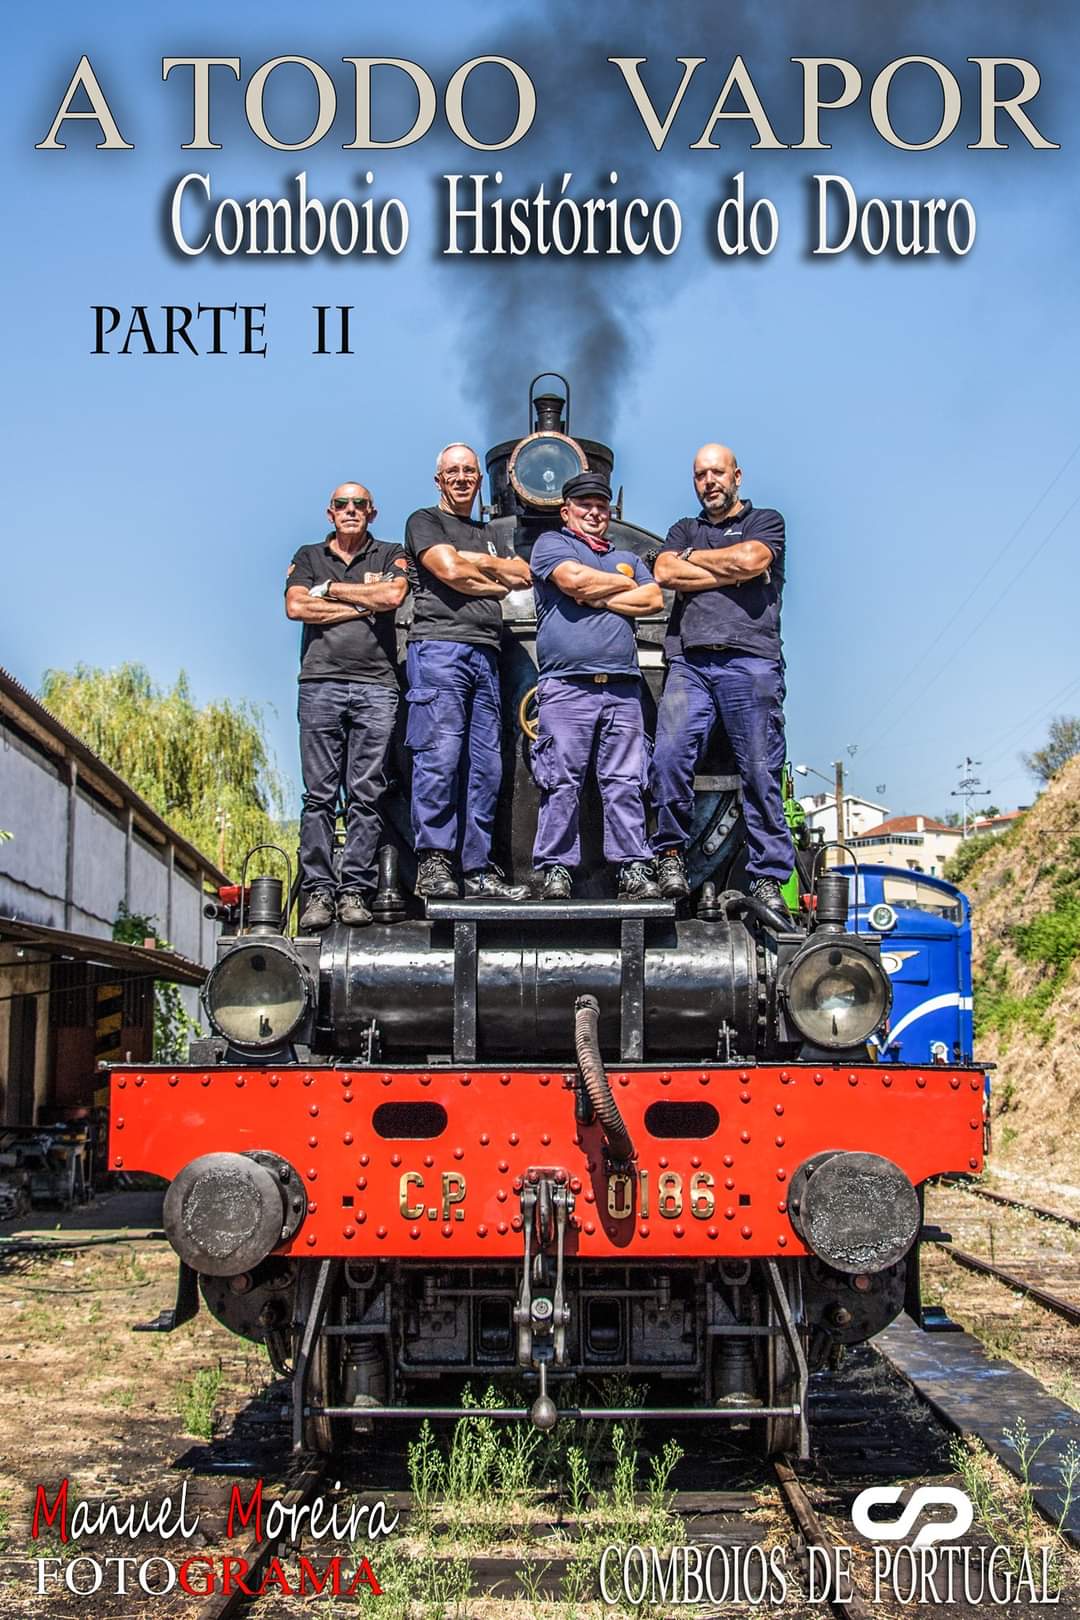 Jose Carlos Barbosa La Vai A Locomotiva A Vapor Cp 0186 Para Mais Um Dia Do Comboio Historico Do Douro T Co Rf6o1o5fv9 Twitter